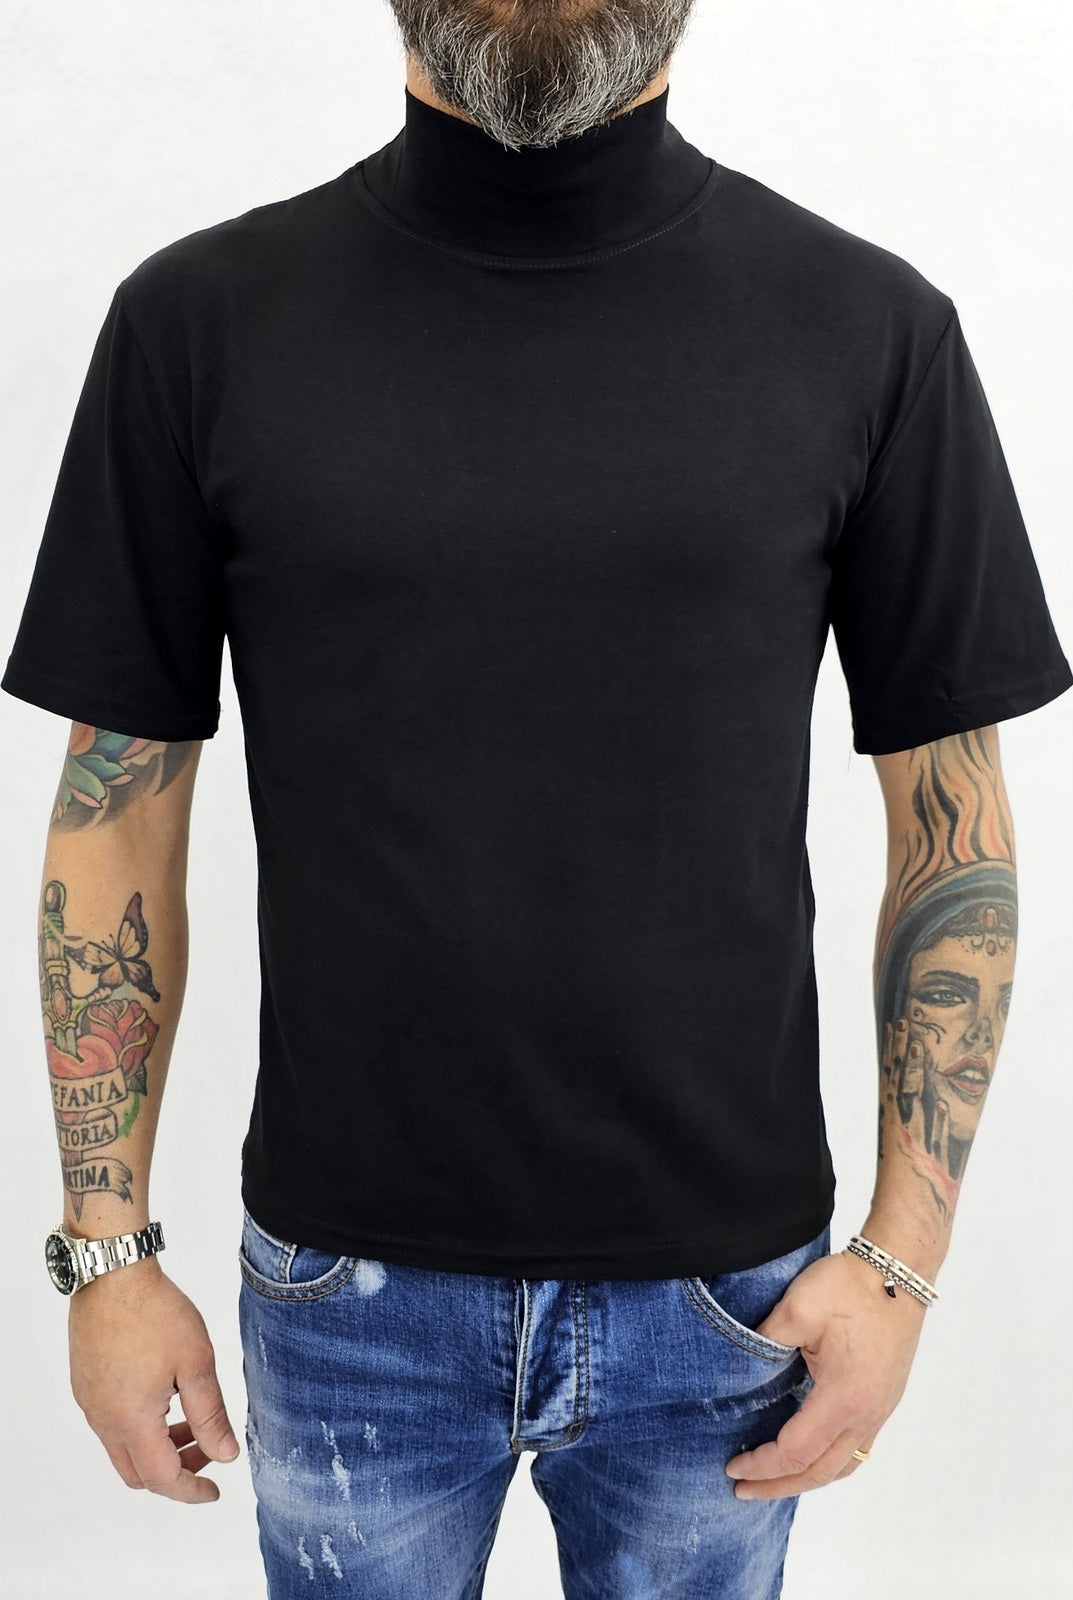 Maglia uomo mezzo collo alto cotone elastico t-shirt s,m,l,xl,xxl